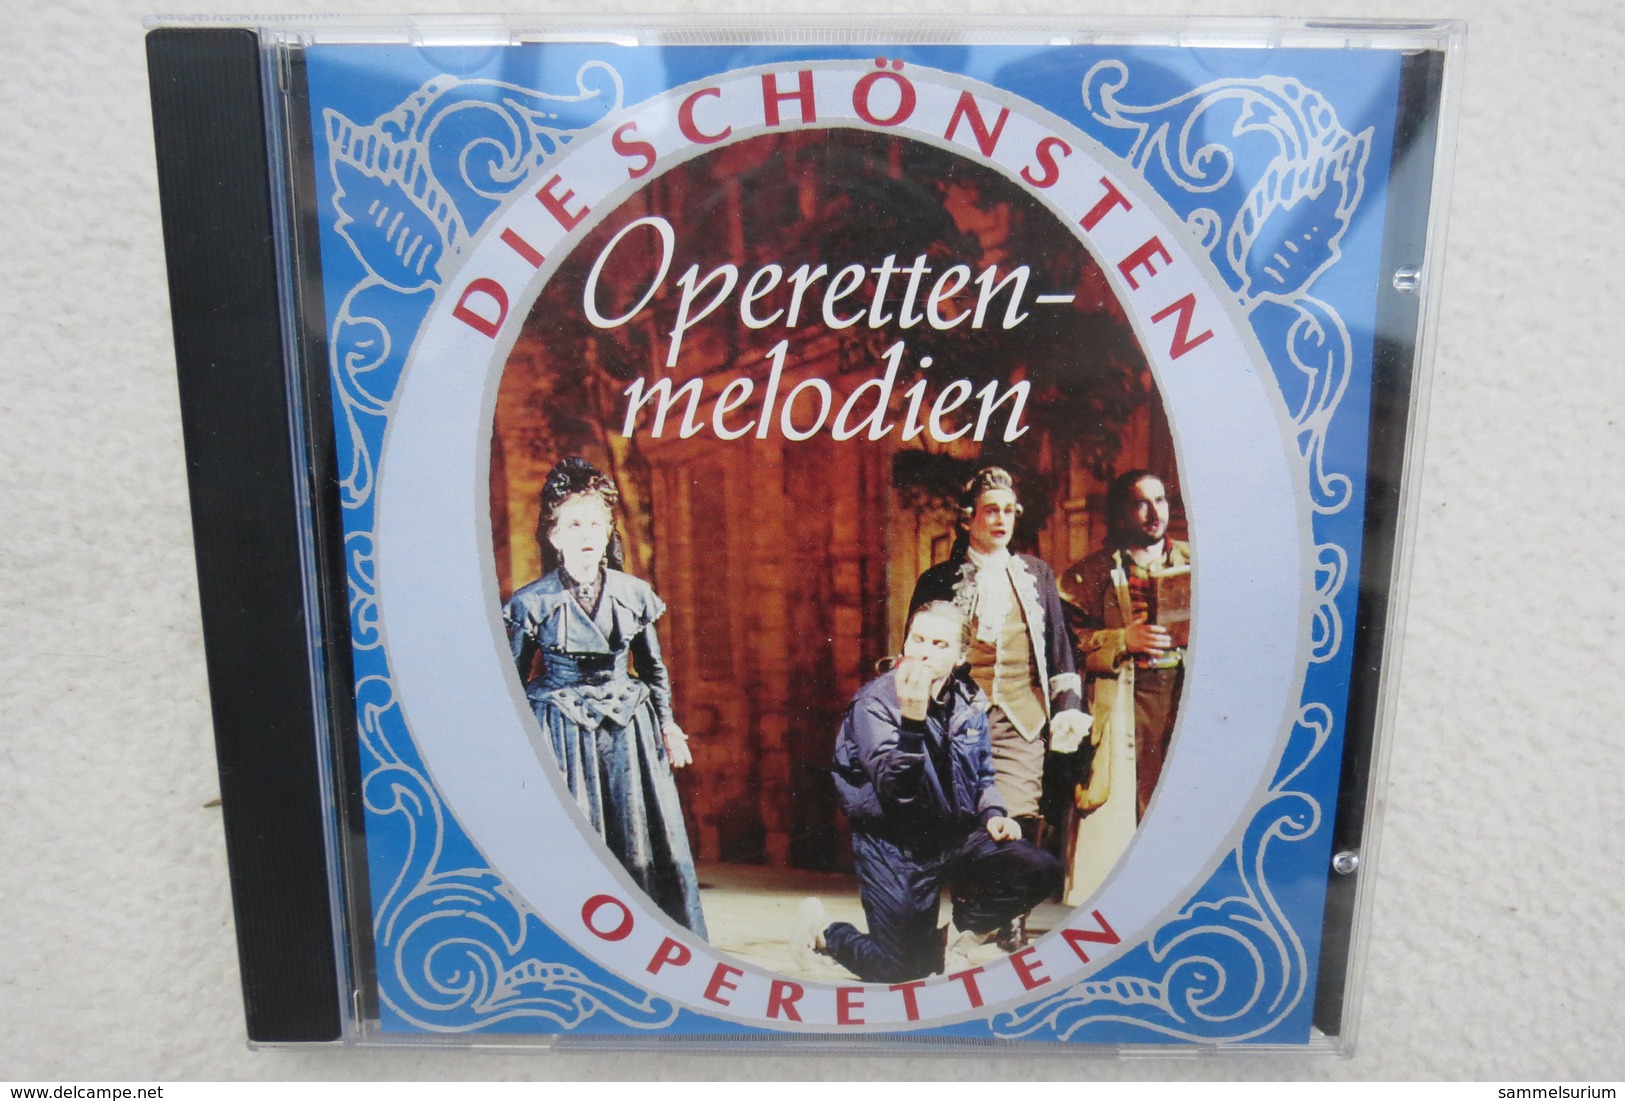 CD "Die Schönsten Operetten" Operettenmelodien - Opera